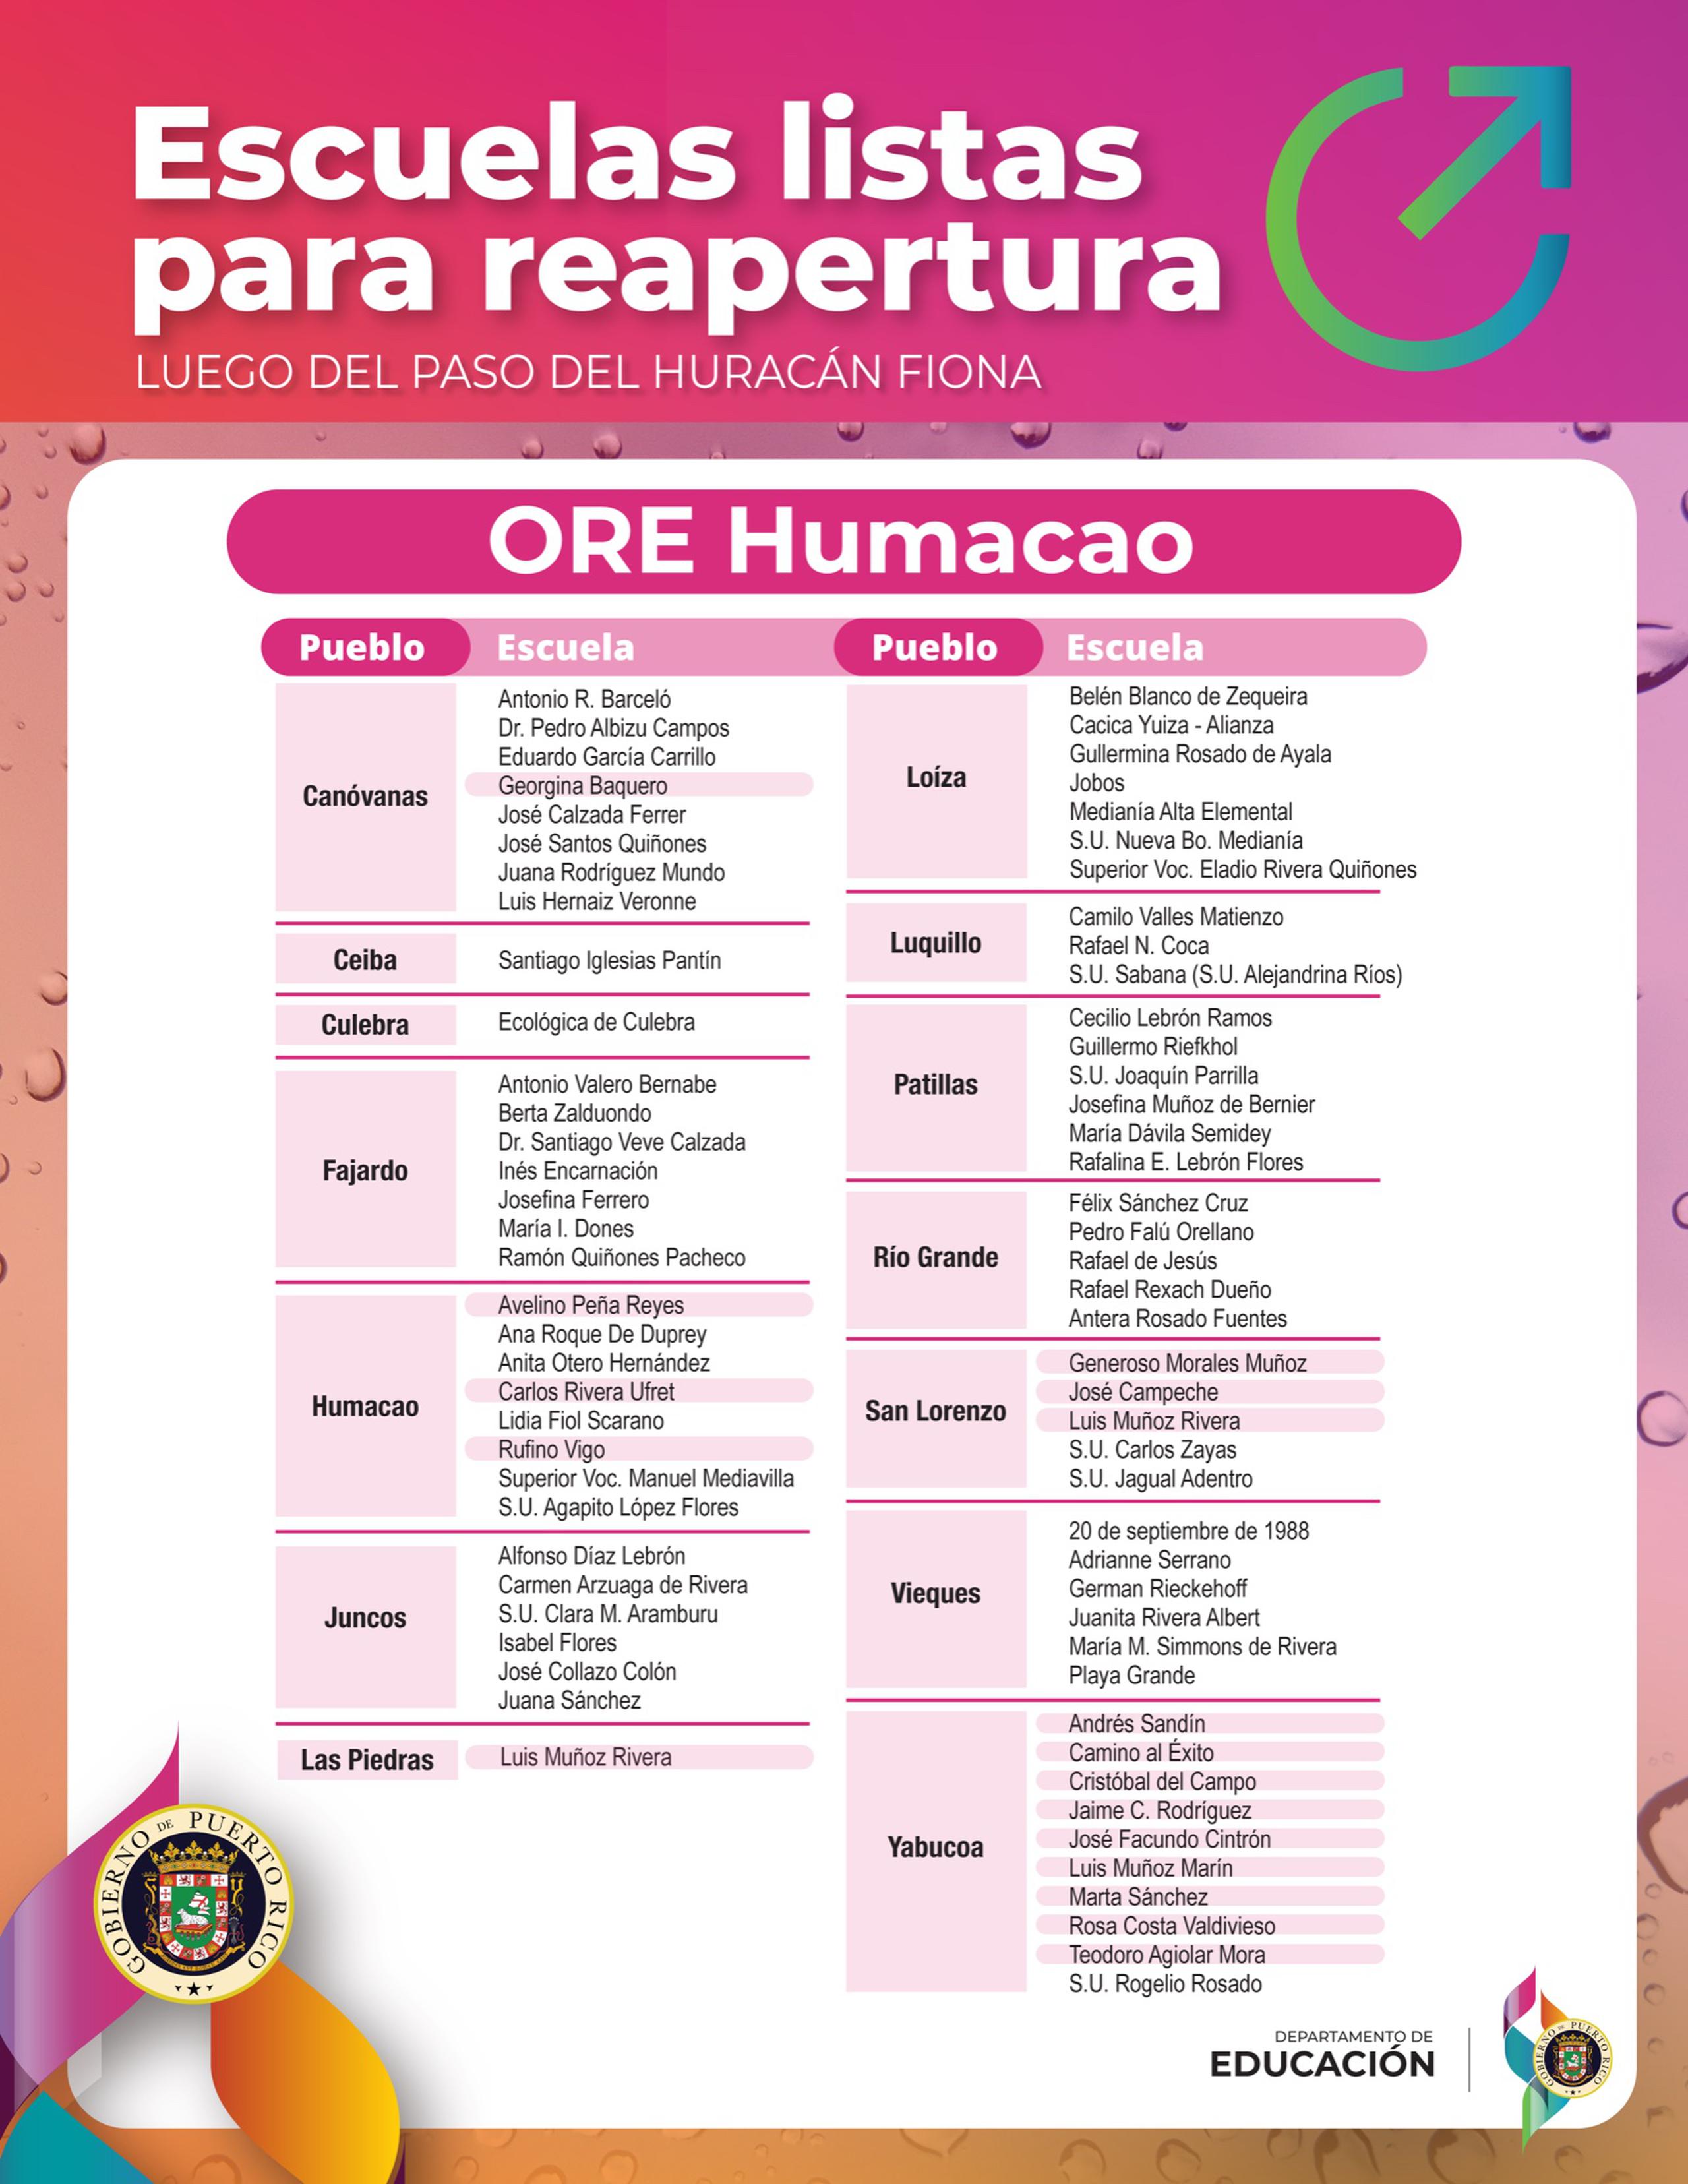 En la región educativa de Humacao están listos 74 planteles.